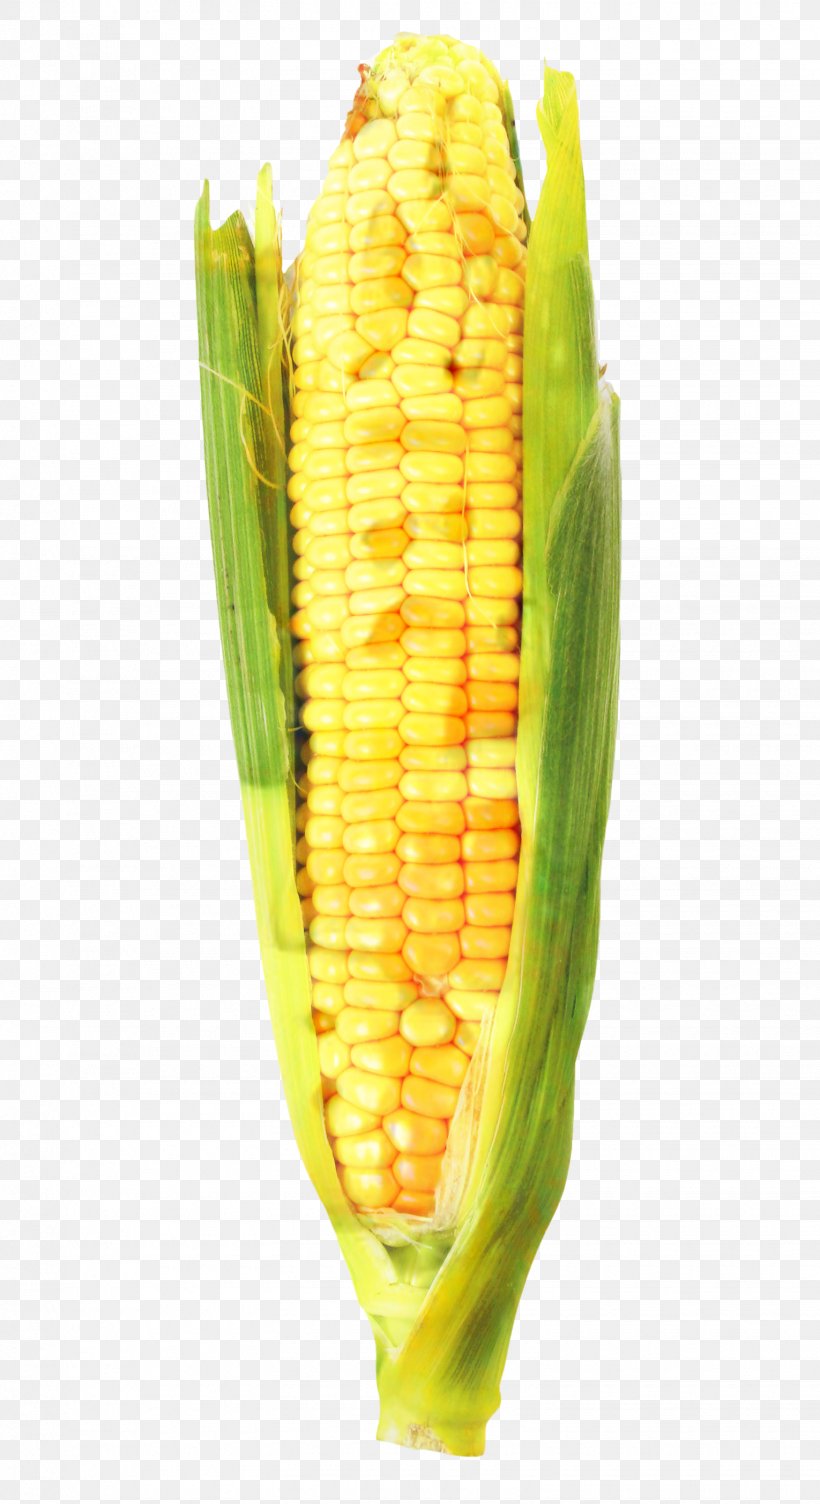 Vegetable Cartoon, PNG, 1530x2808px, Corn On The Cob, Corn, Corn Kernel, Corn Kernels, Corn Tortilla Download Free